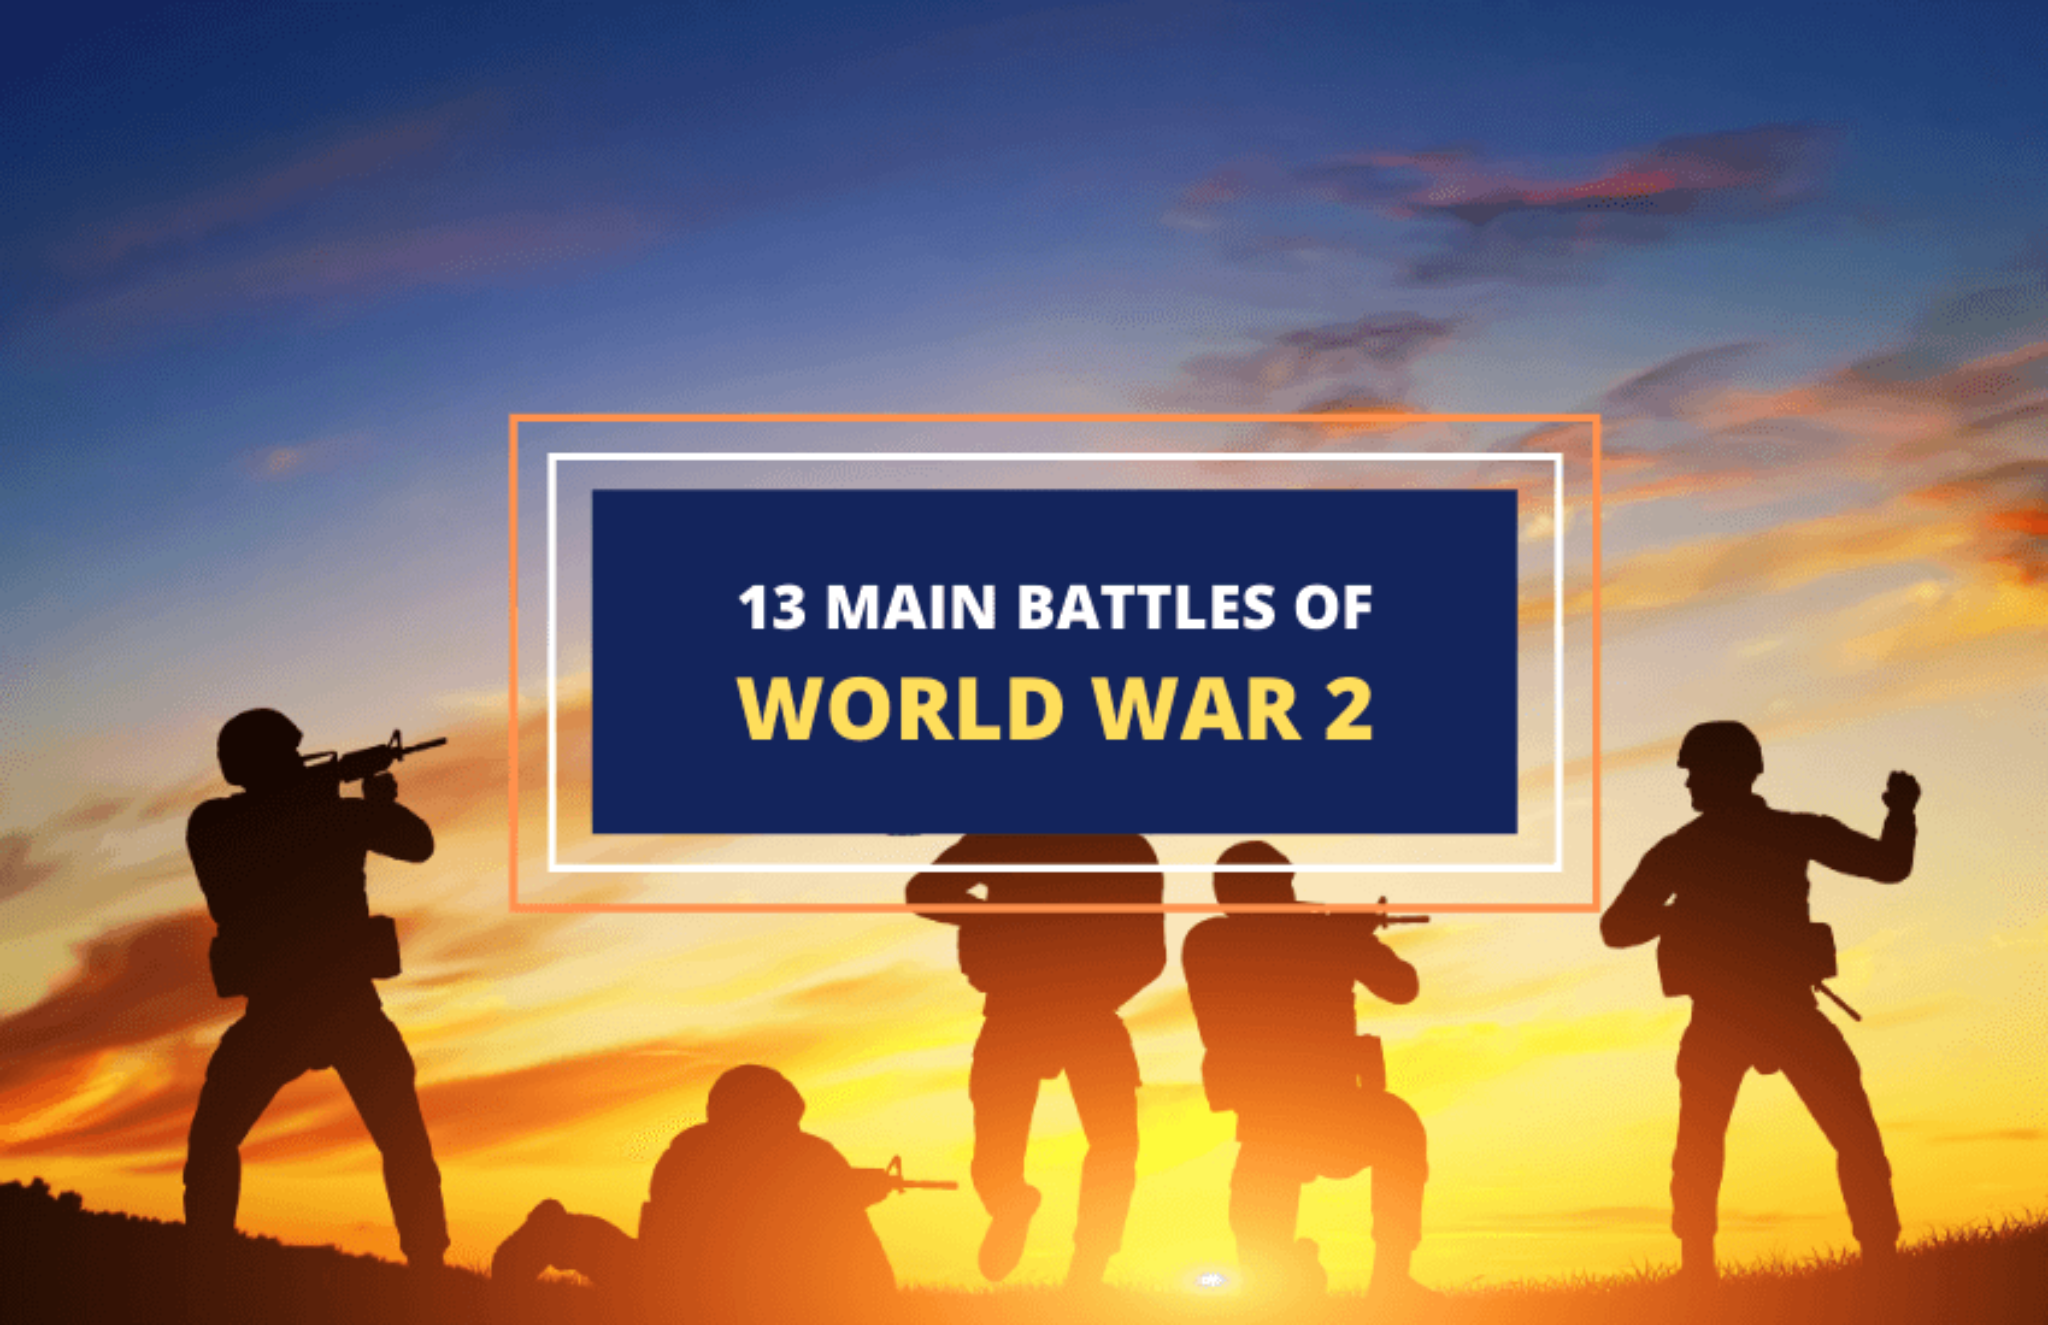 13-main-battles-of-world-war-2-a-list-symbol-sage